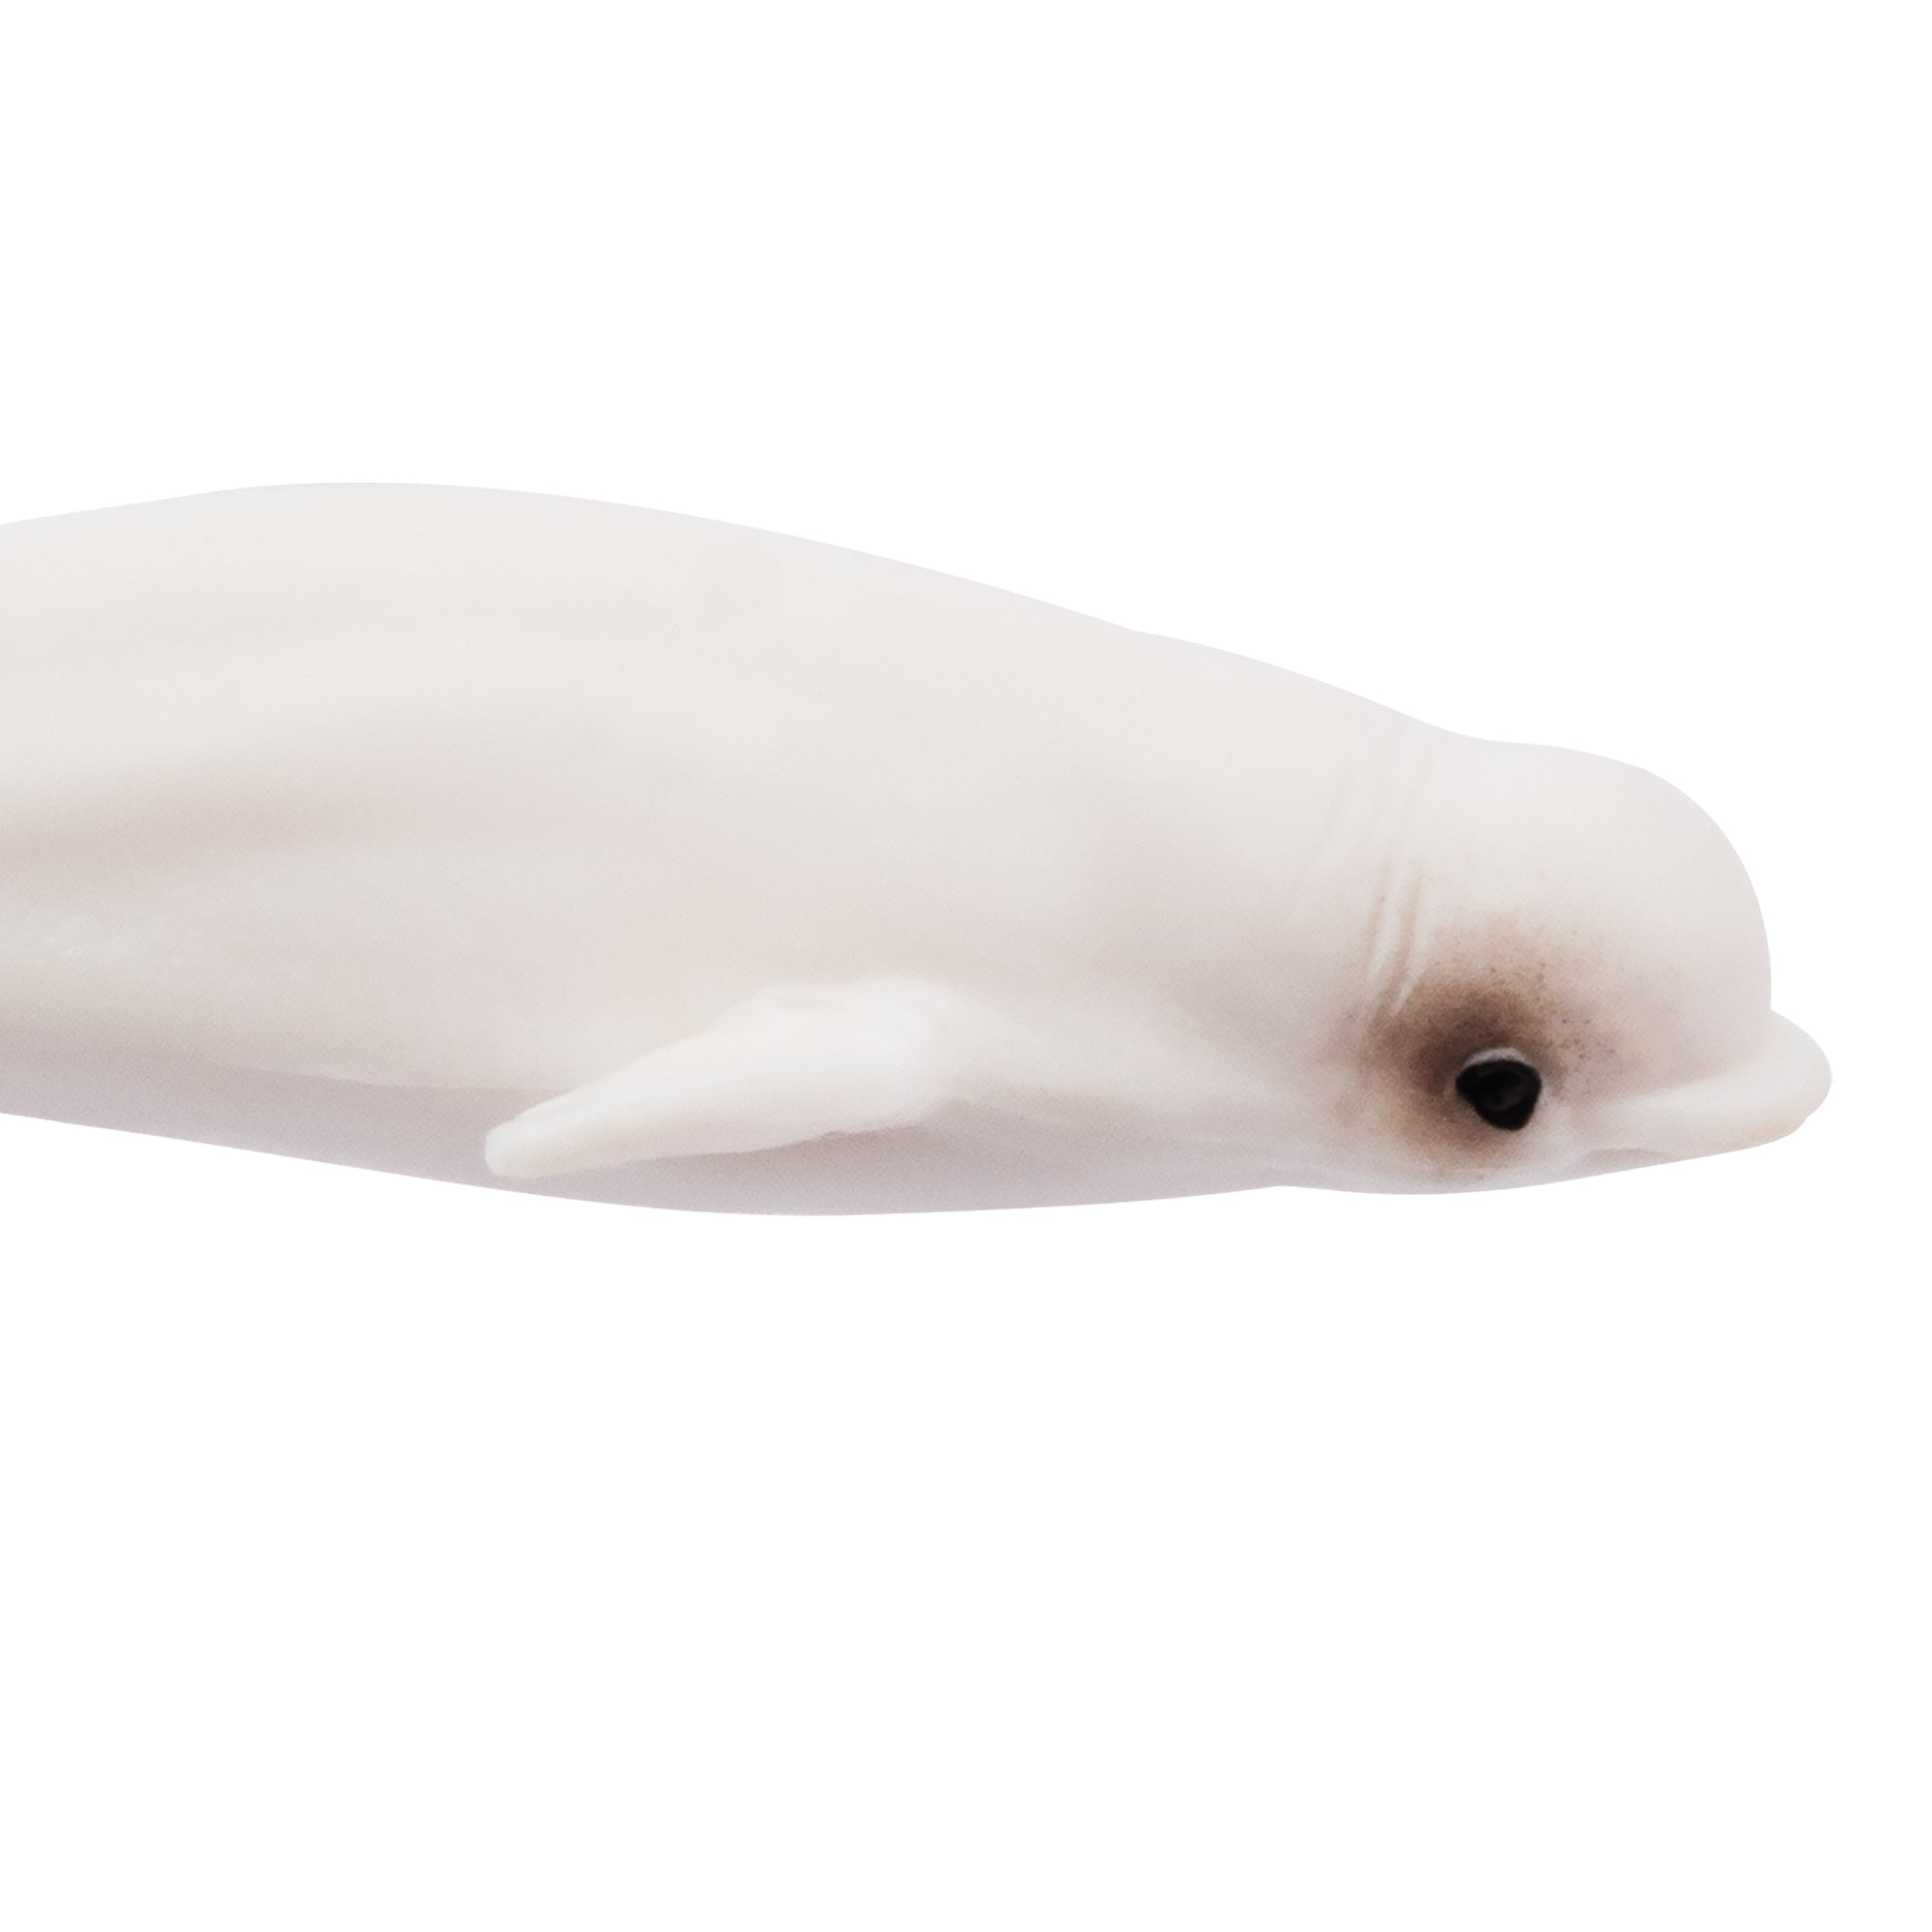 Toymany Beluga Figurine Toy-detail